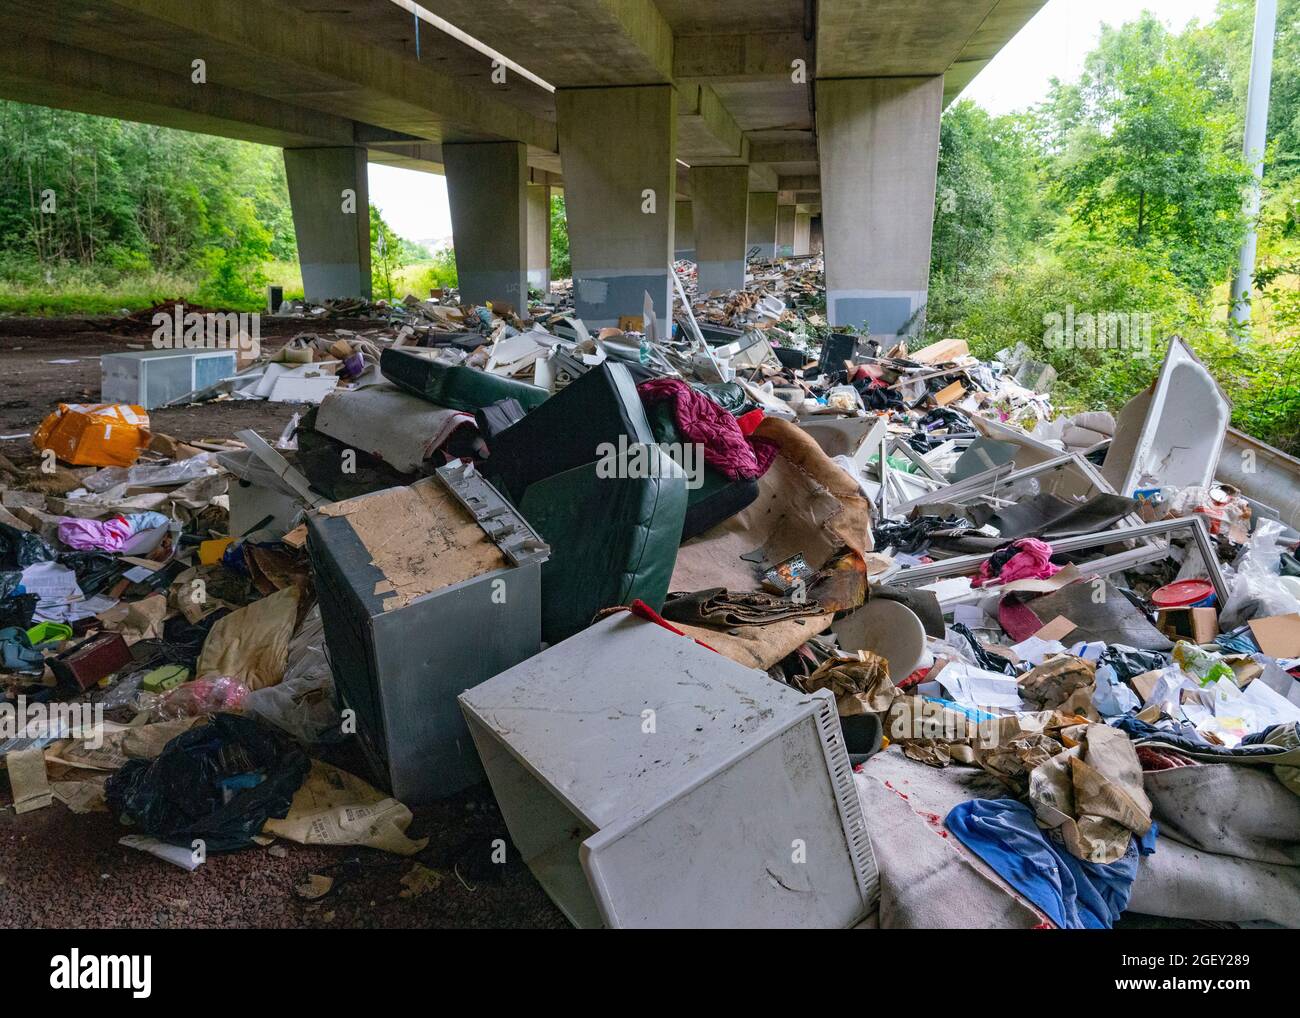 Eine riesige Menge illegaler Abfälle von Baustellen und Haushalten, die unter dem Viadukt M8, Glasgow, Schottland, gedumpt wurden Stockfoto